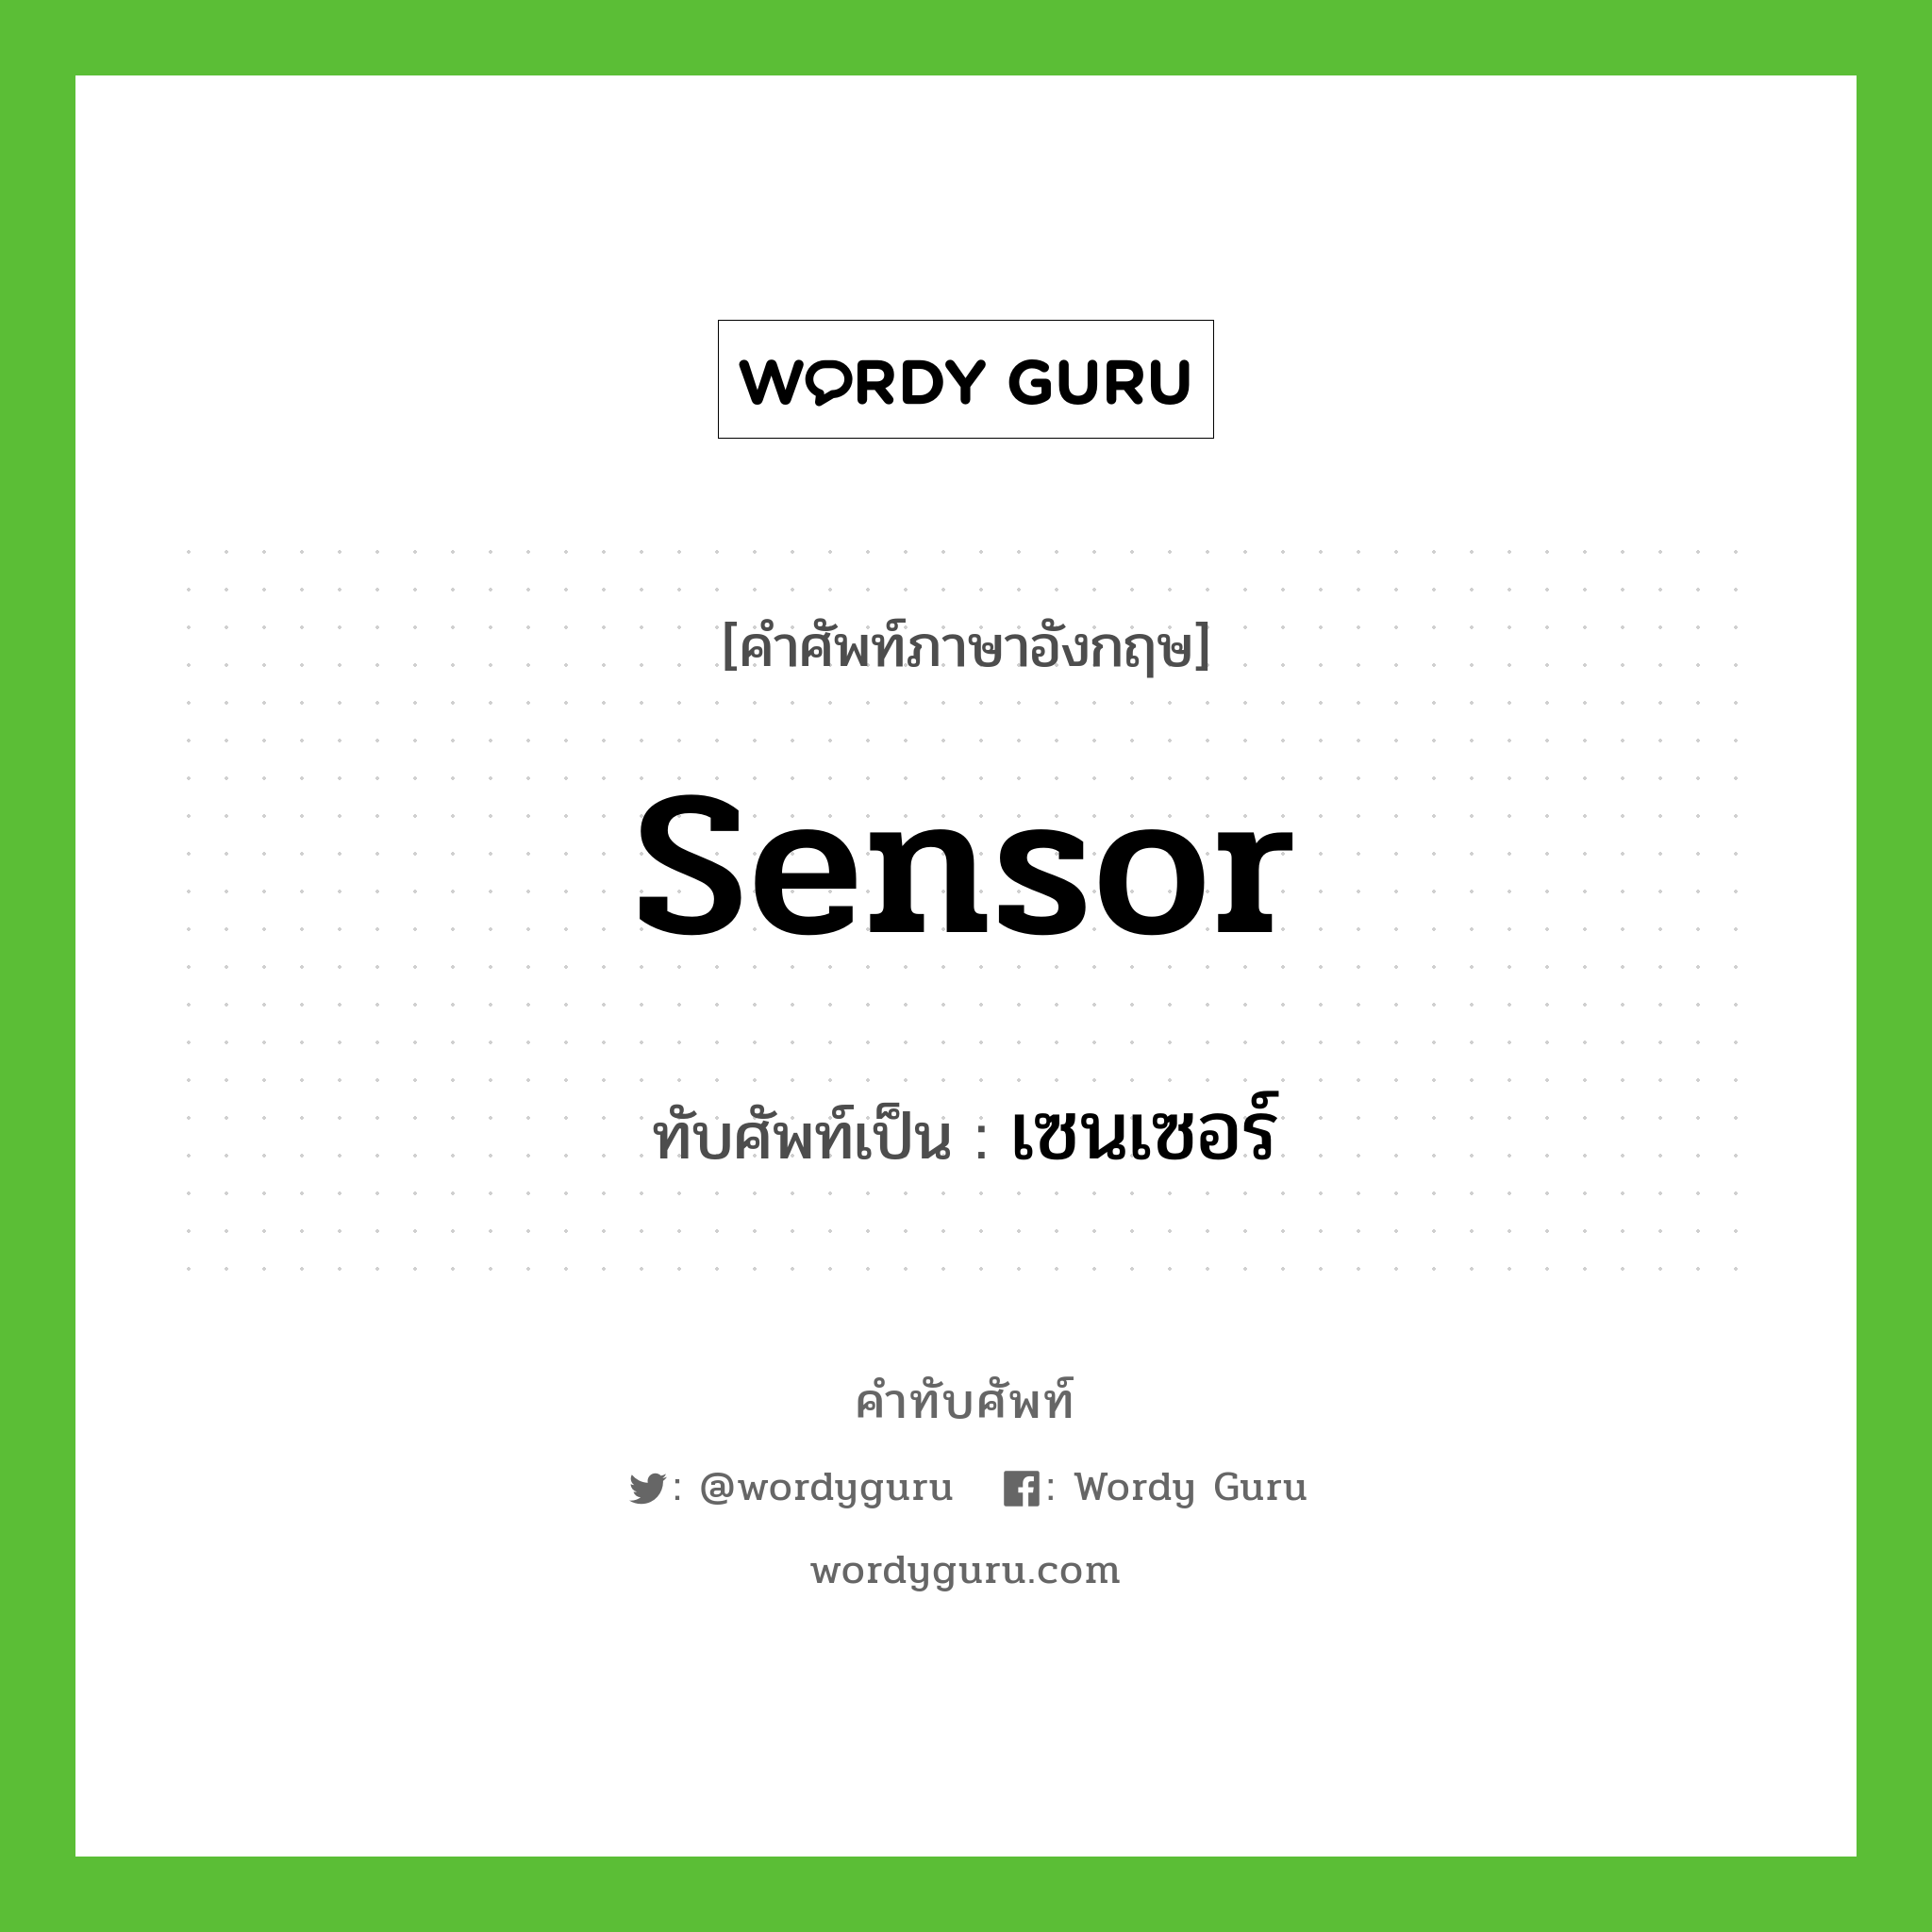 sensor เขียนเป็นคำไทยว่าอะไร?, คำศัพท์ภาษาอังกฤษ sensor ทับศัพท์เป็น เซนเซอร์